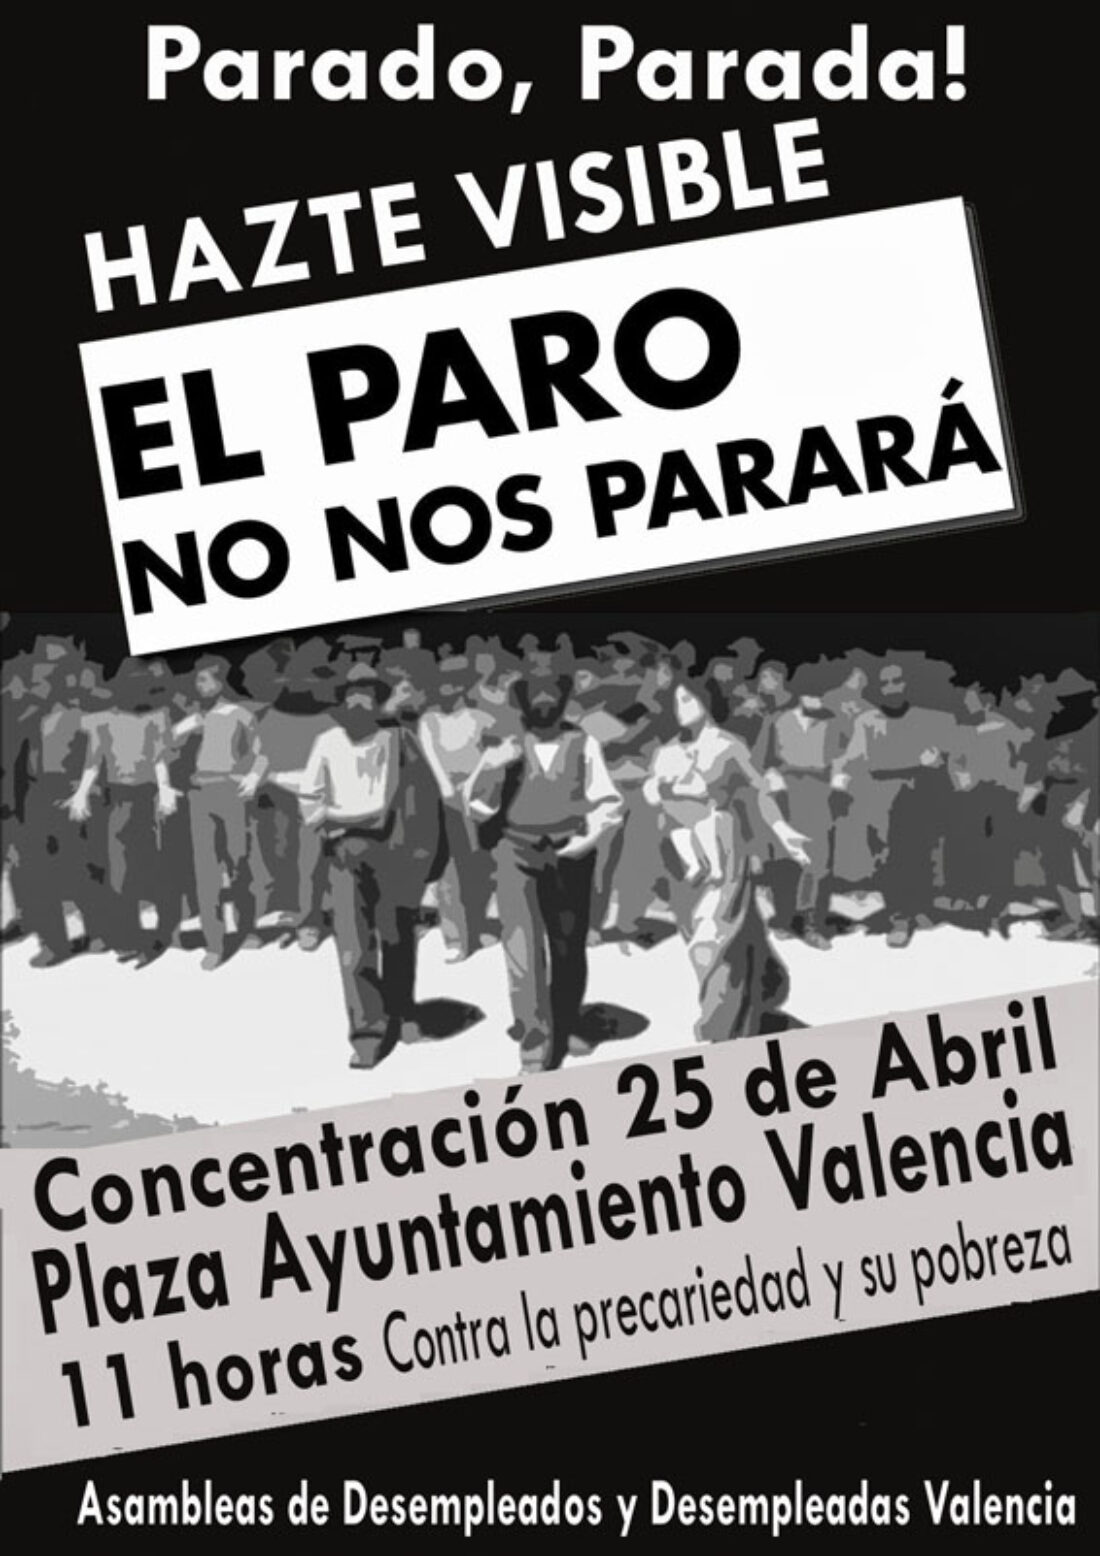 25 Abril: Concentración ¡Parado, Parada, hazte visible!